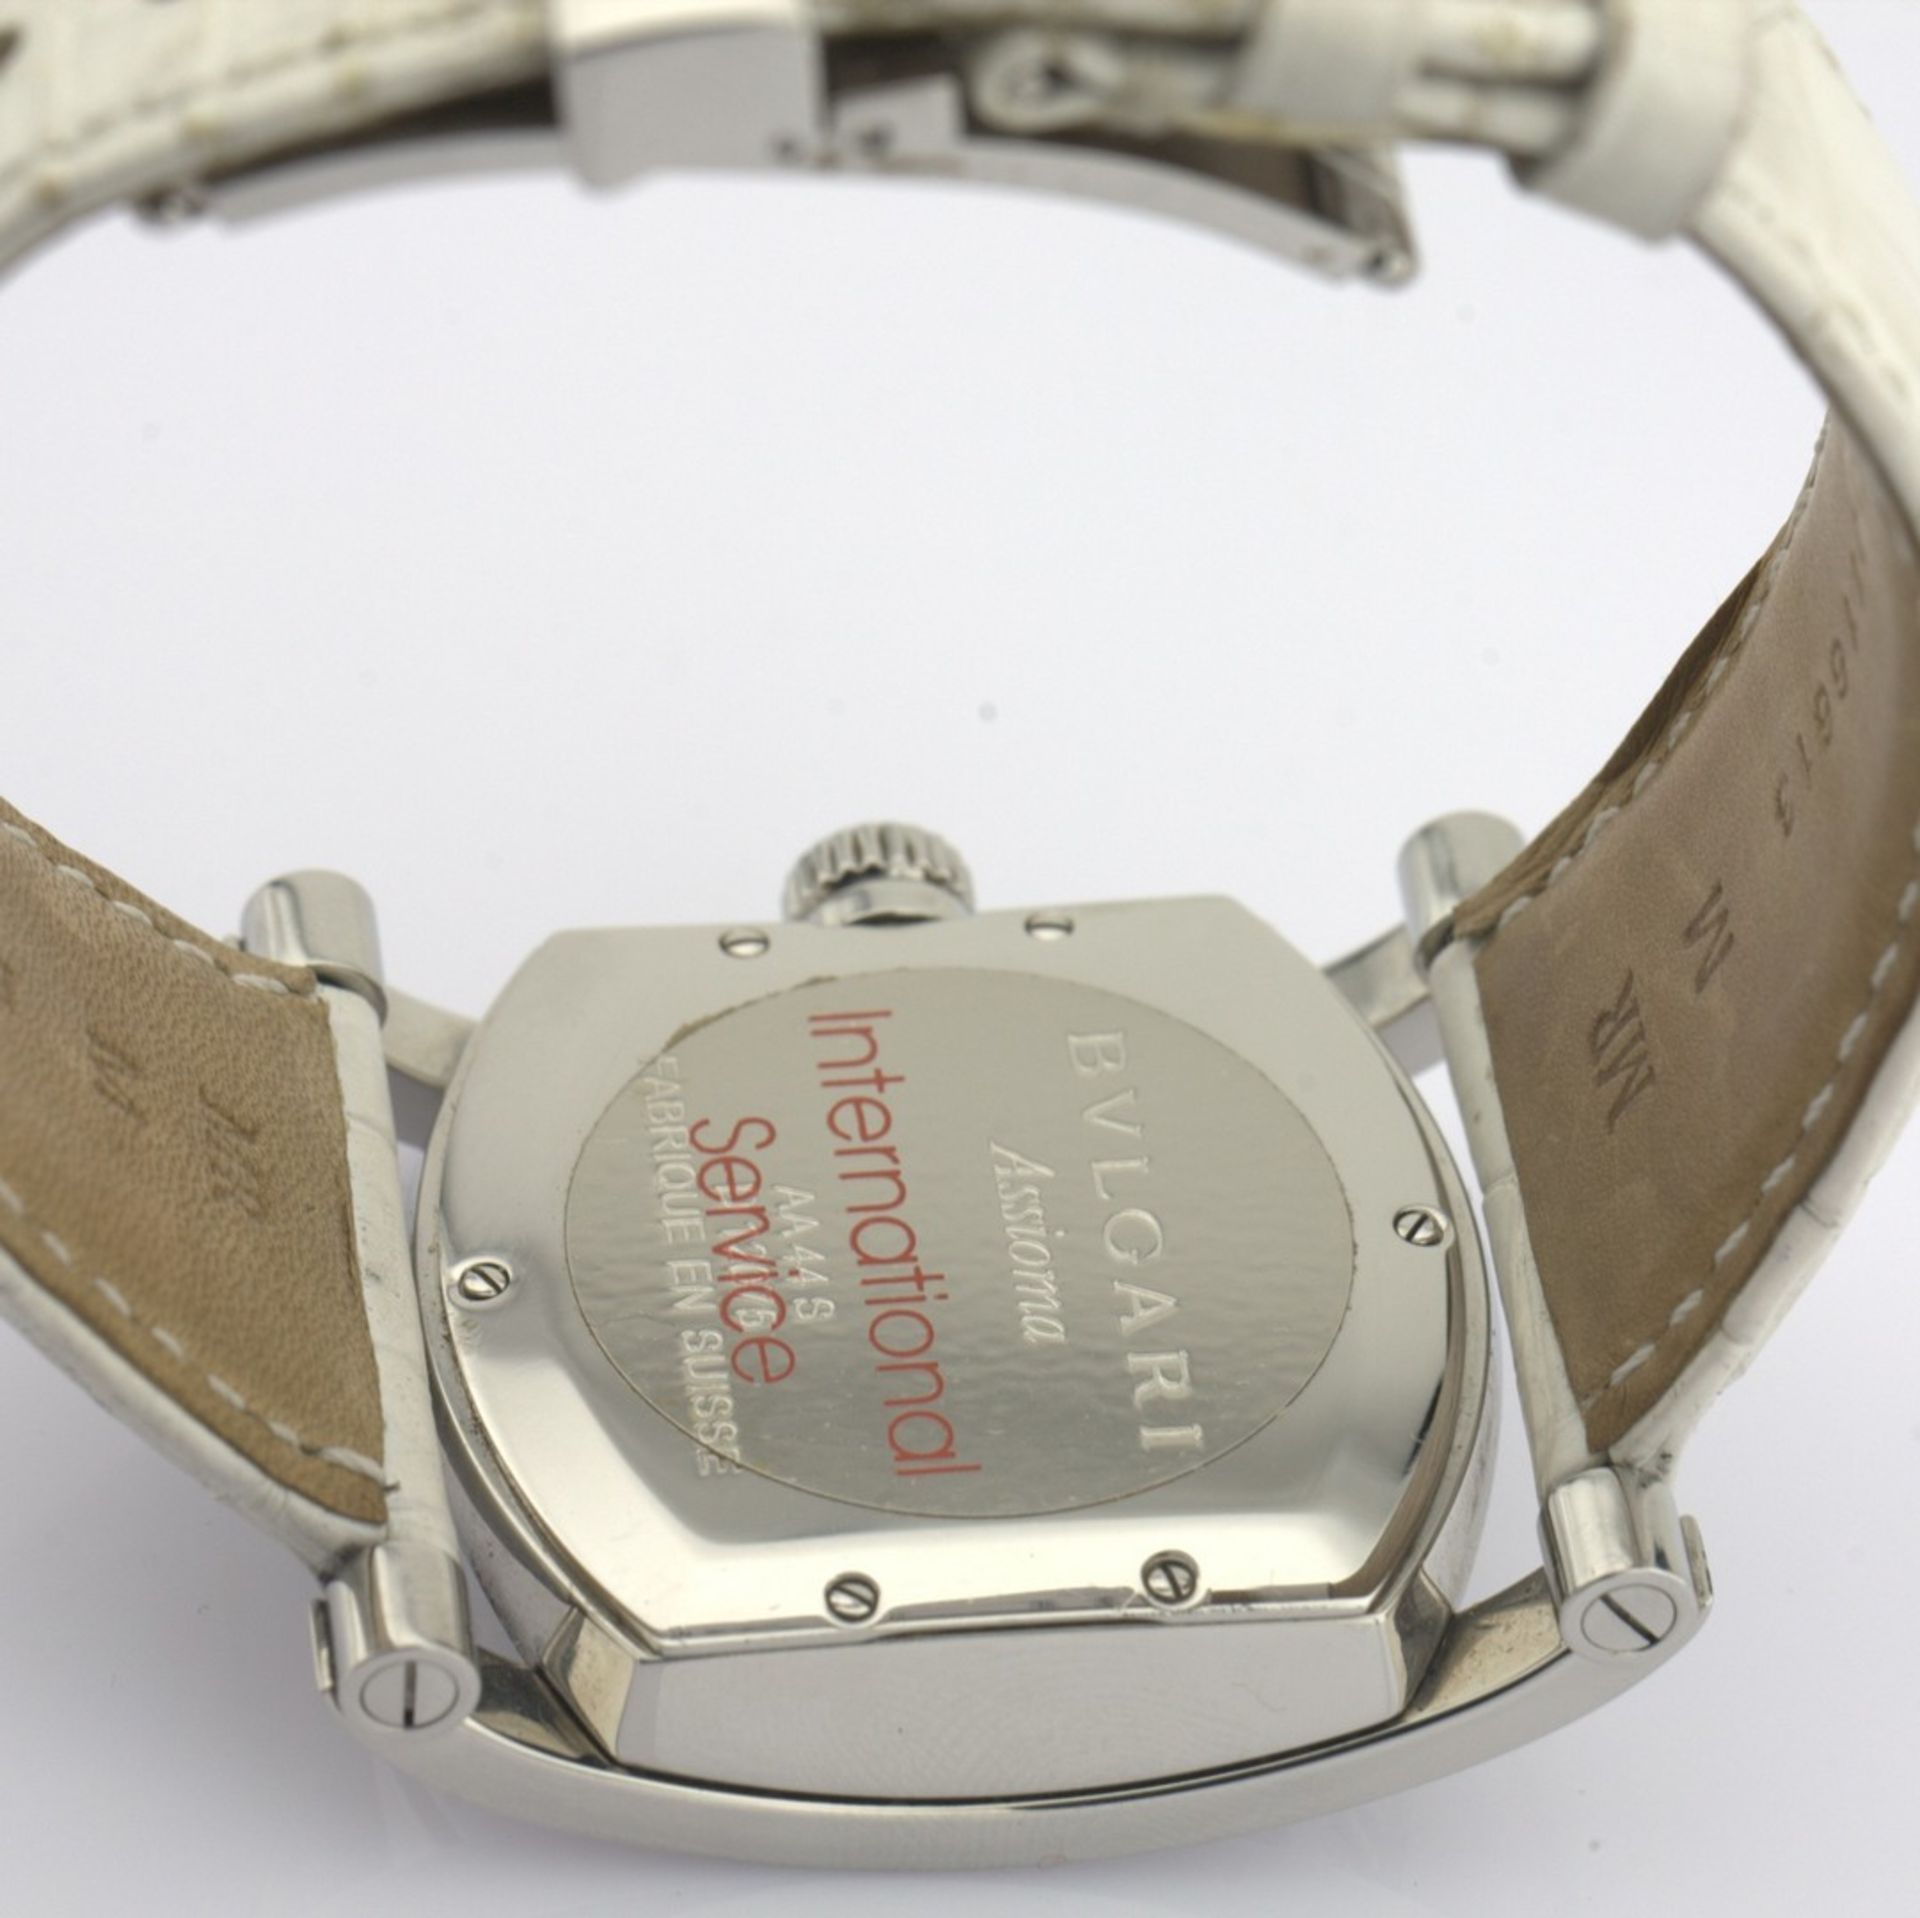 Bvlgari / AA44S Diamond Mother of Pearl Dial - Gentlemen's Steel Wristwatch - Image 8 of 11